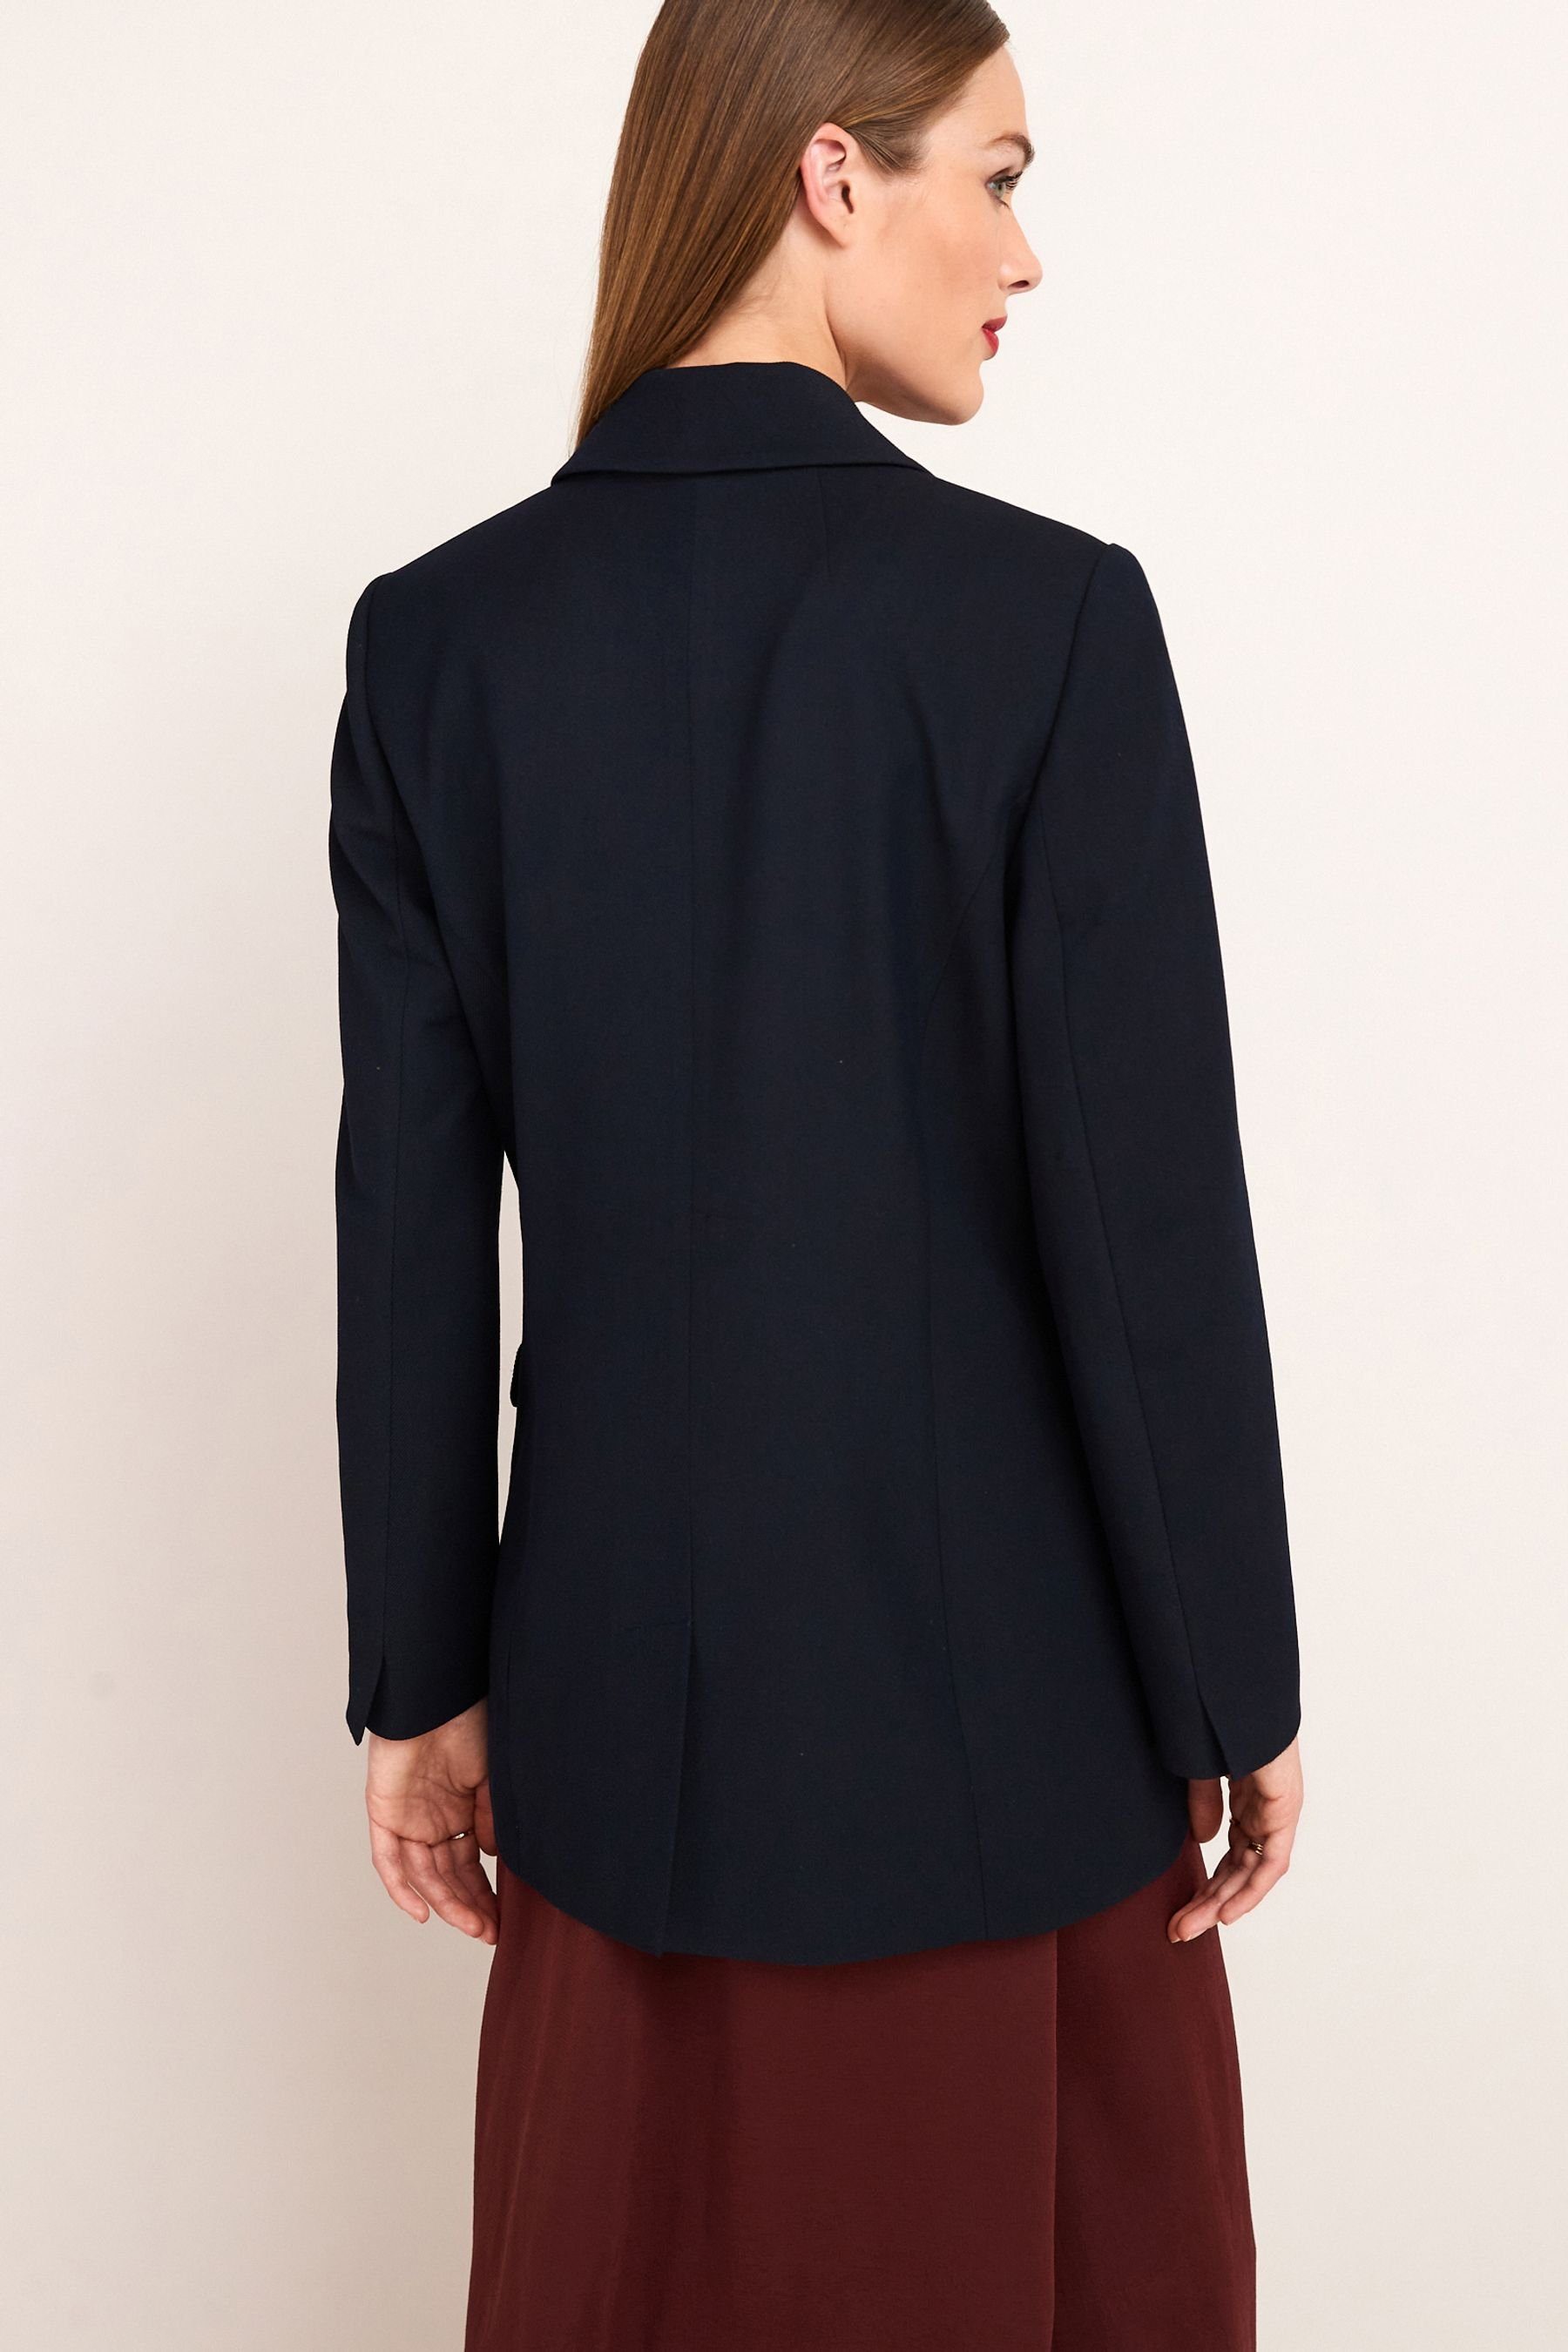 Damen Blazer Next Jackenblazer Premium-Jacke im Uniformstil